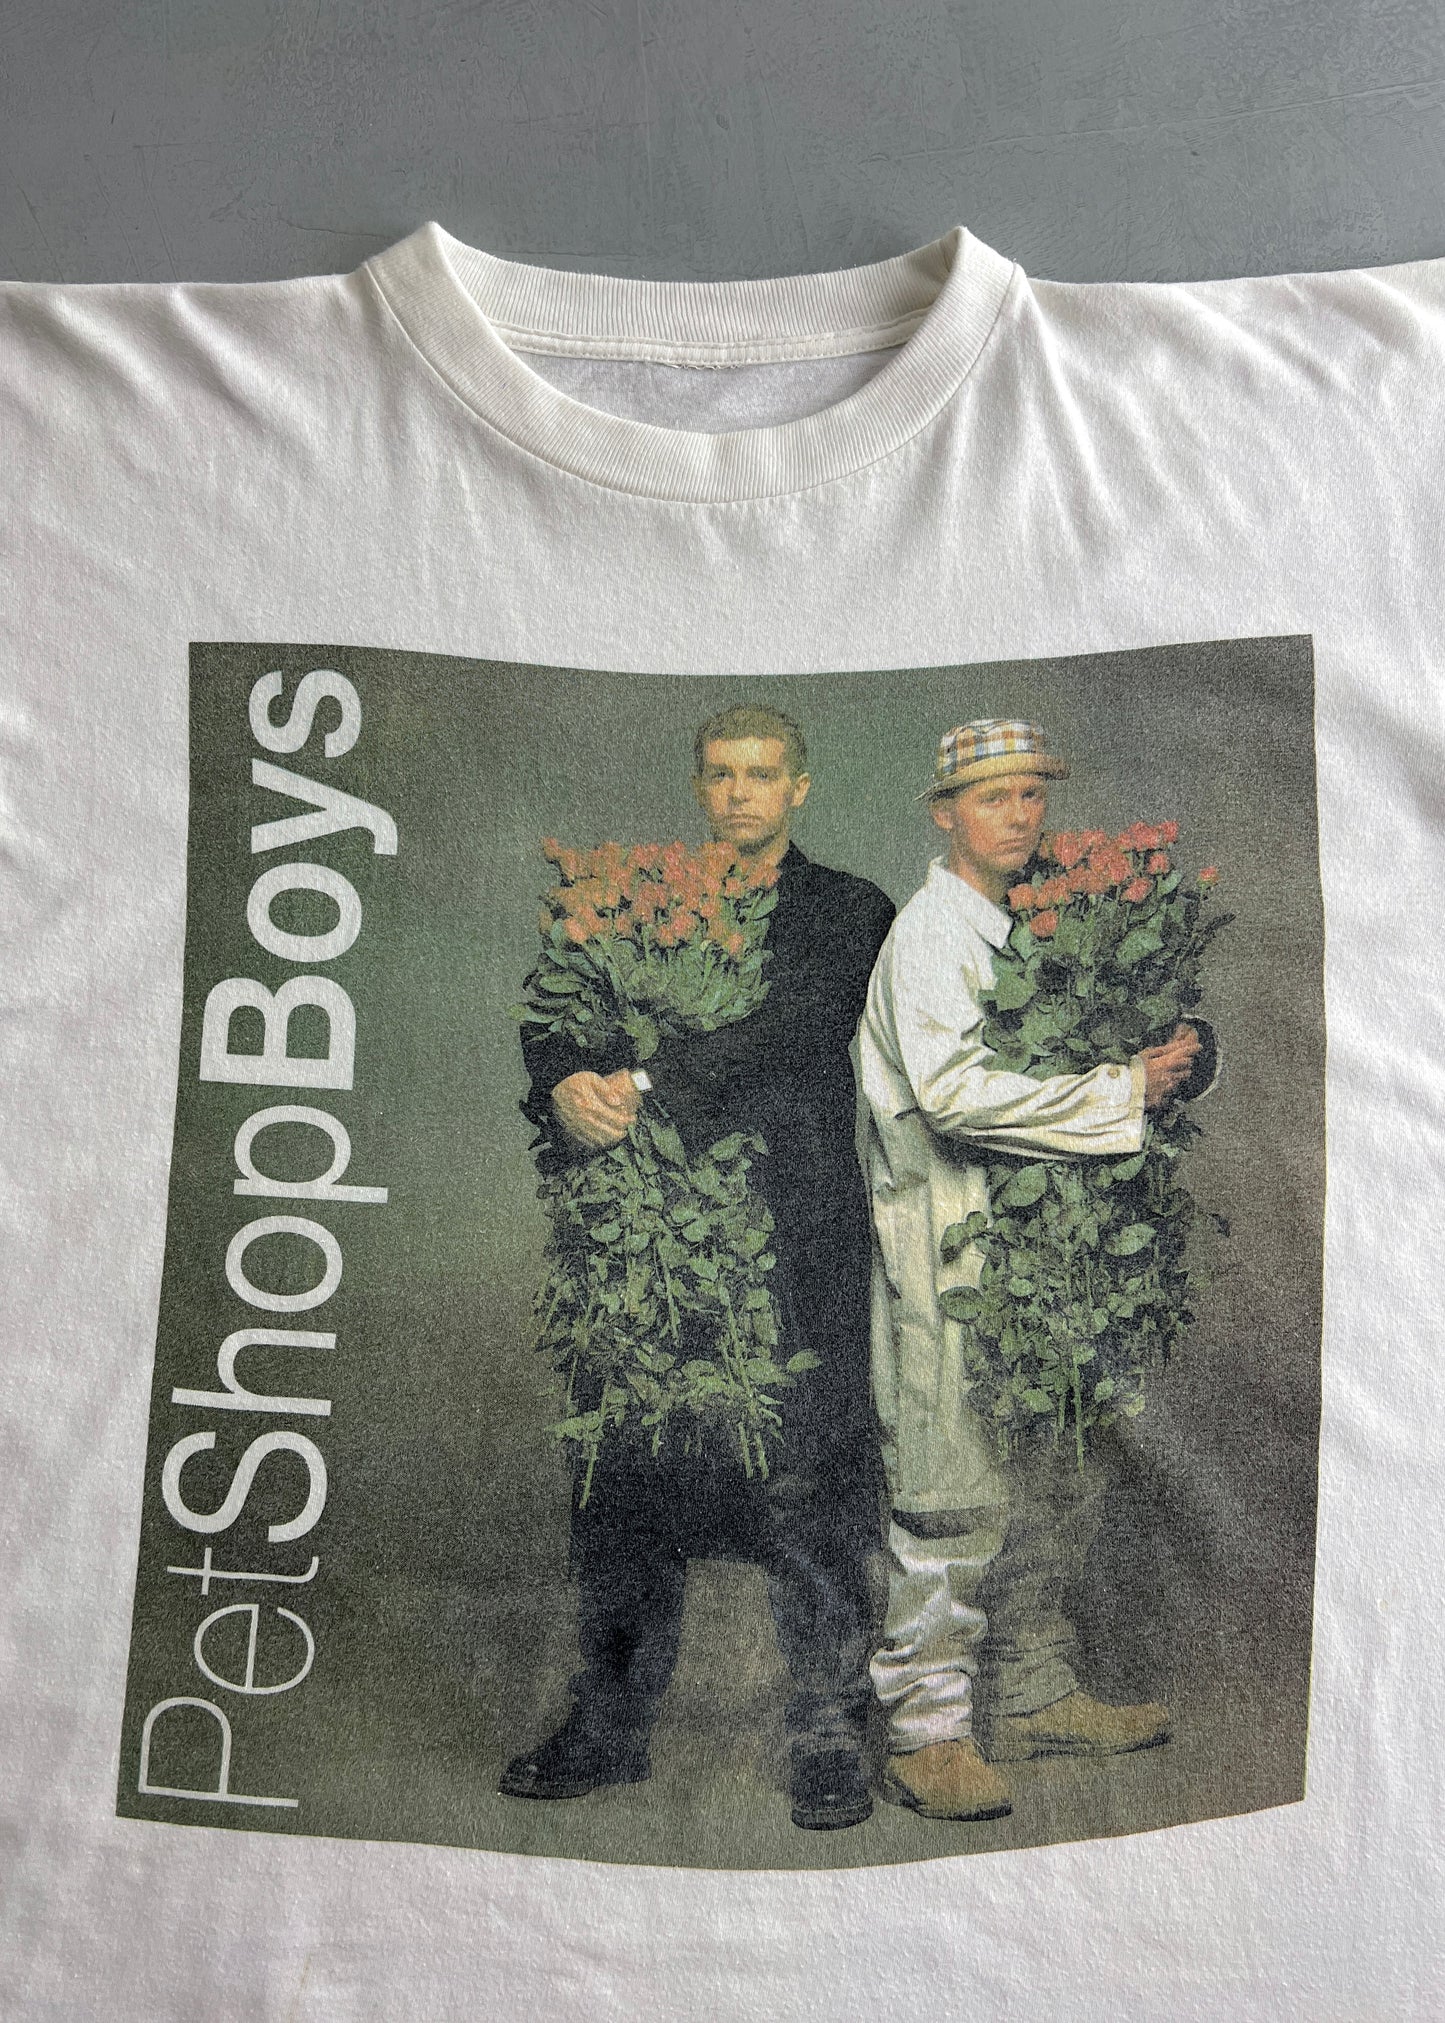 '91 Pet Shop Boys 'Performance' Tour Tee [L]